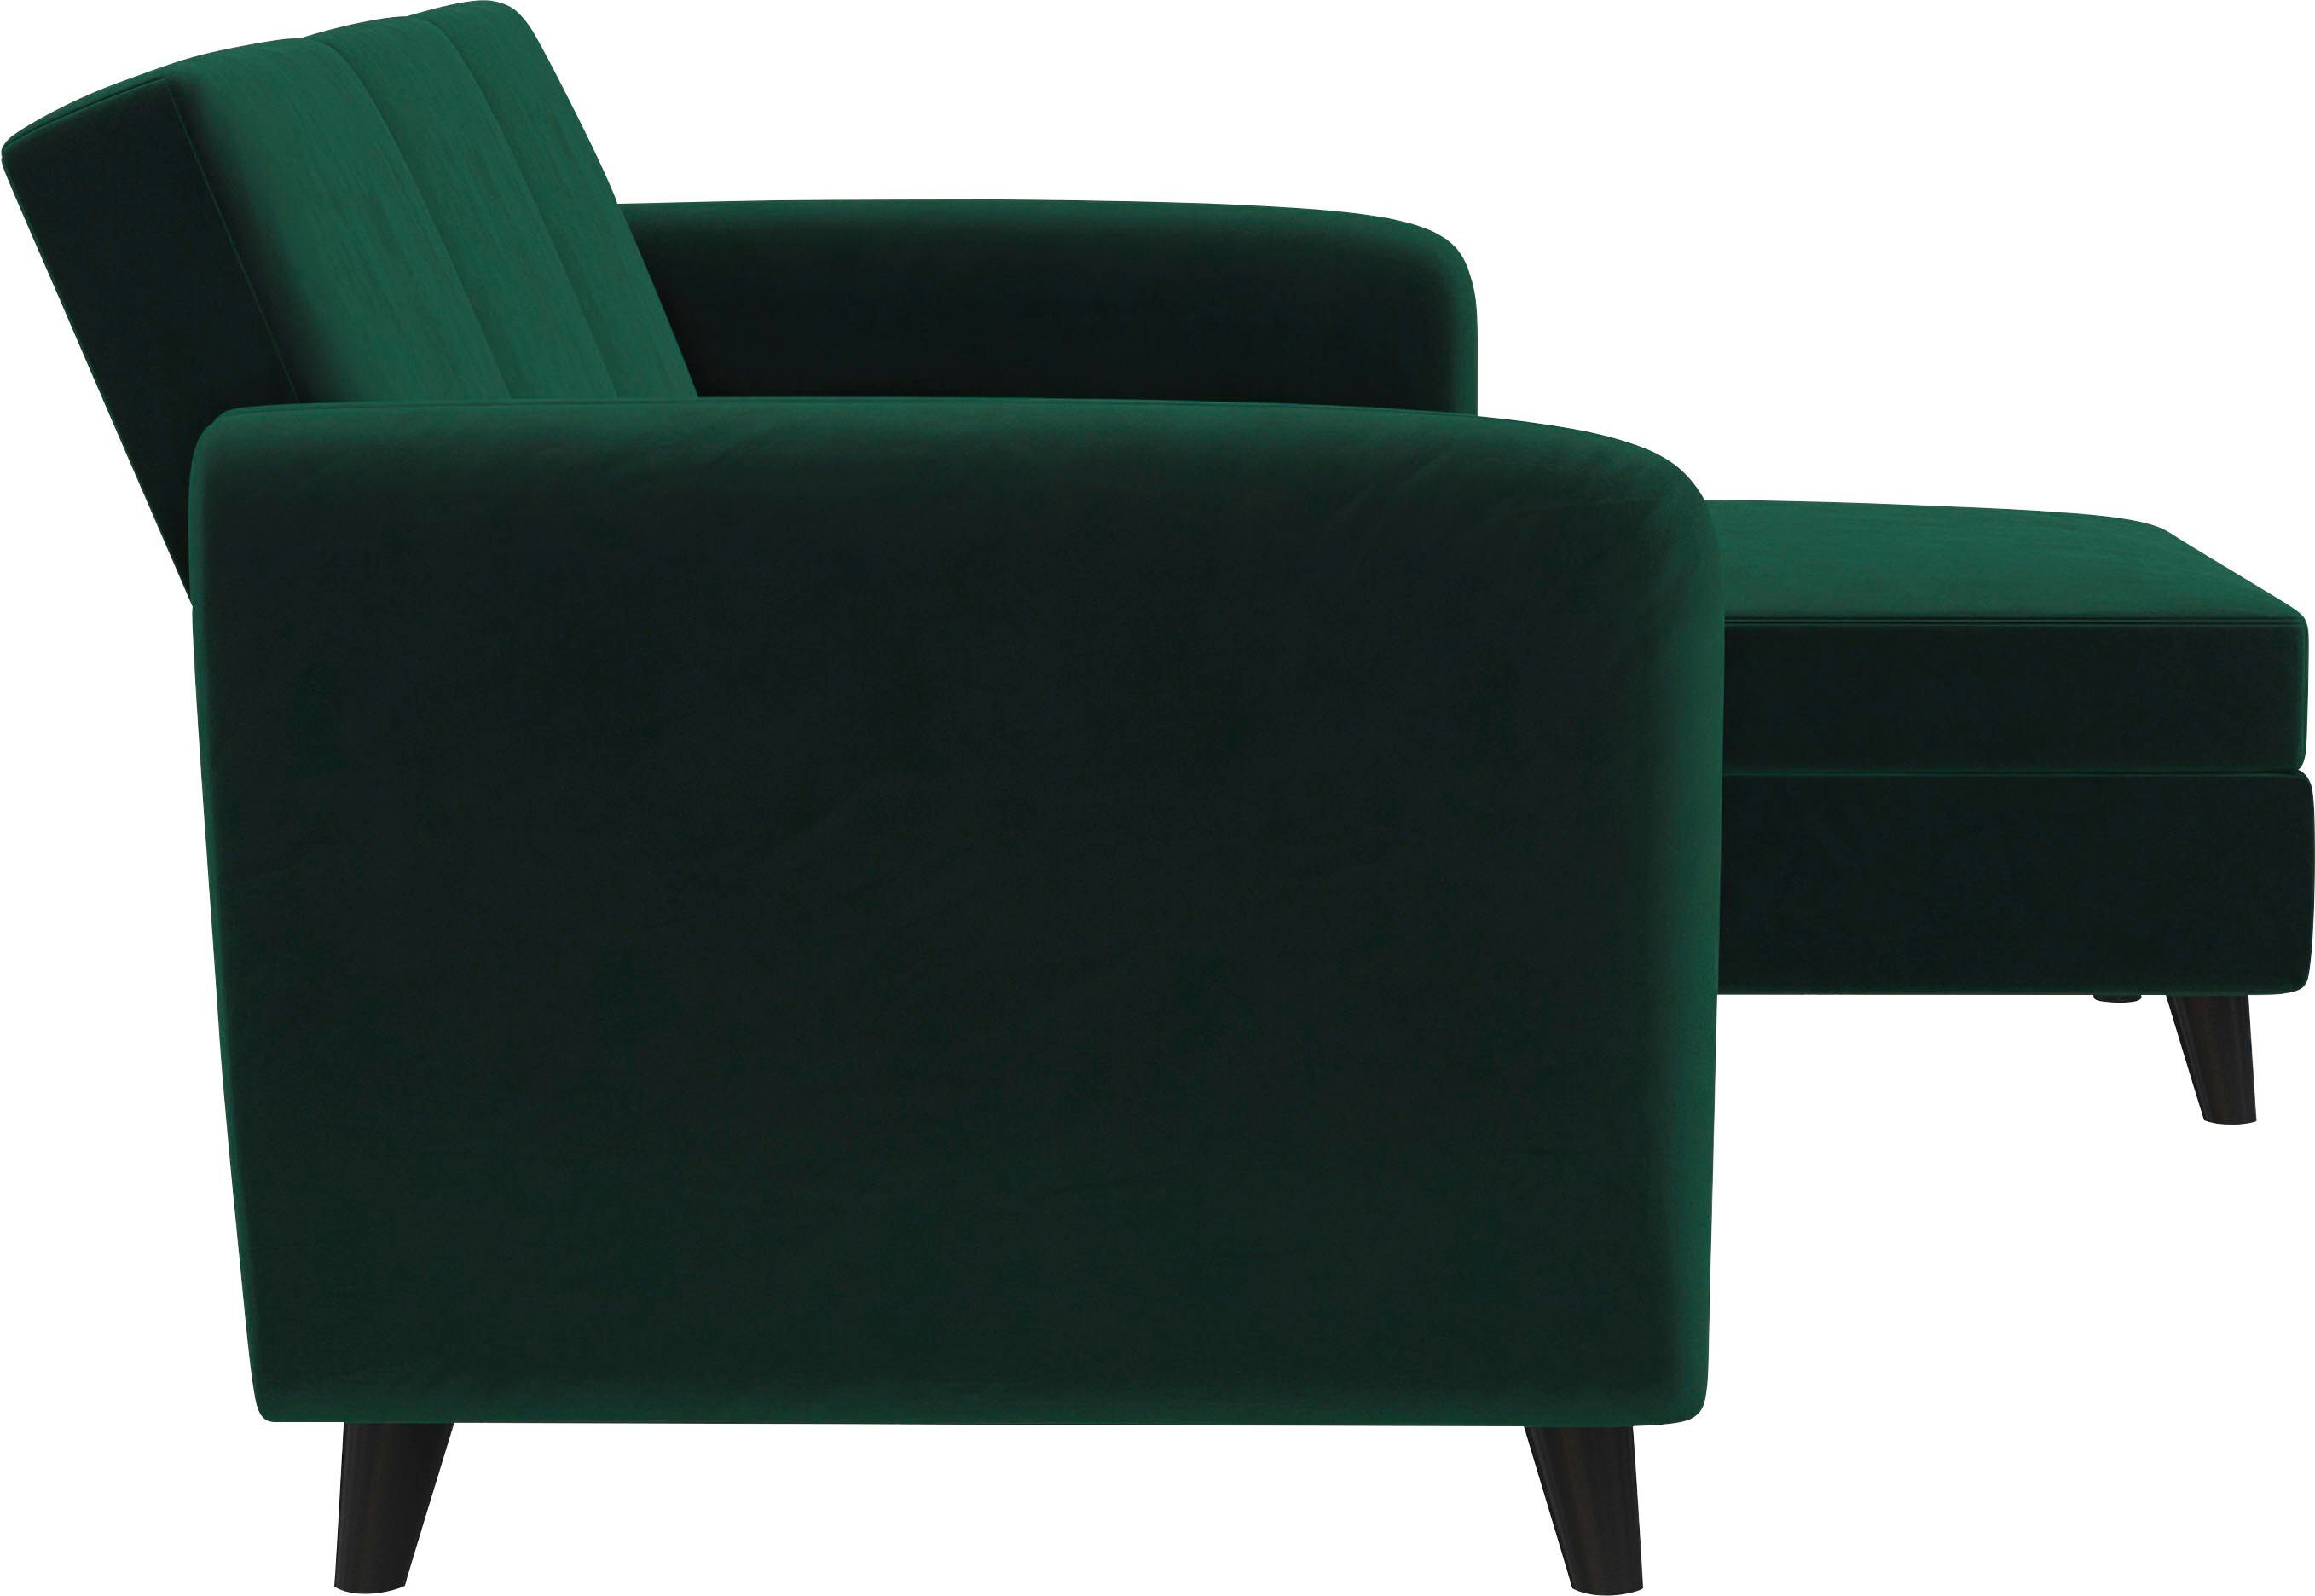 Breite Sitzhöhe Rückenlehne, Farbvarianten, verschiedene dunkelgrün cm, Dorel 43 219 Home cm Perry, Ecksofa